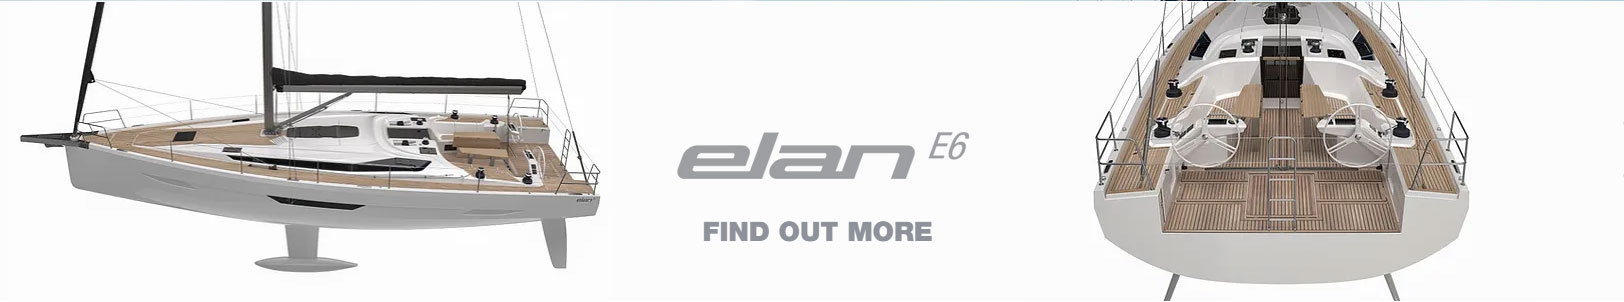 Elan E6